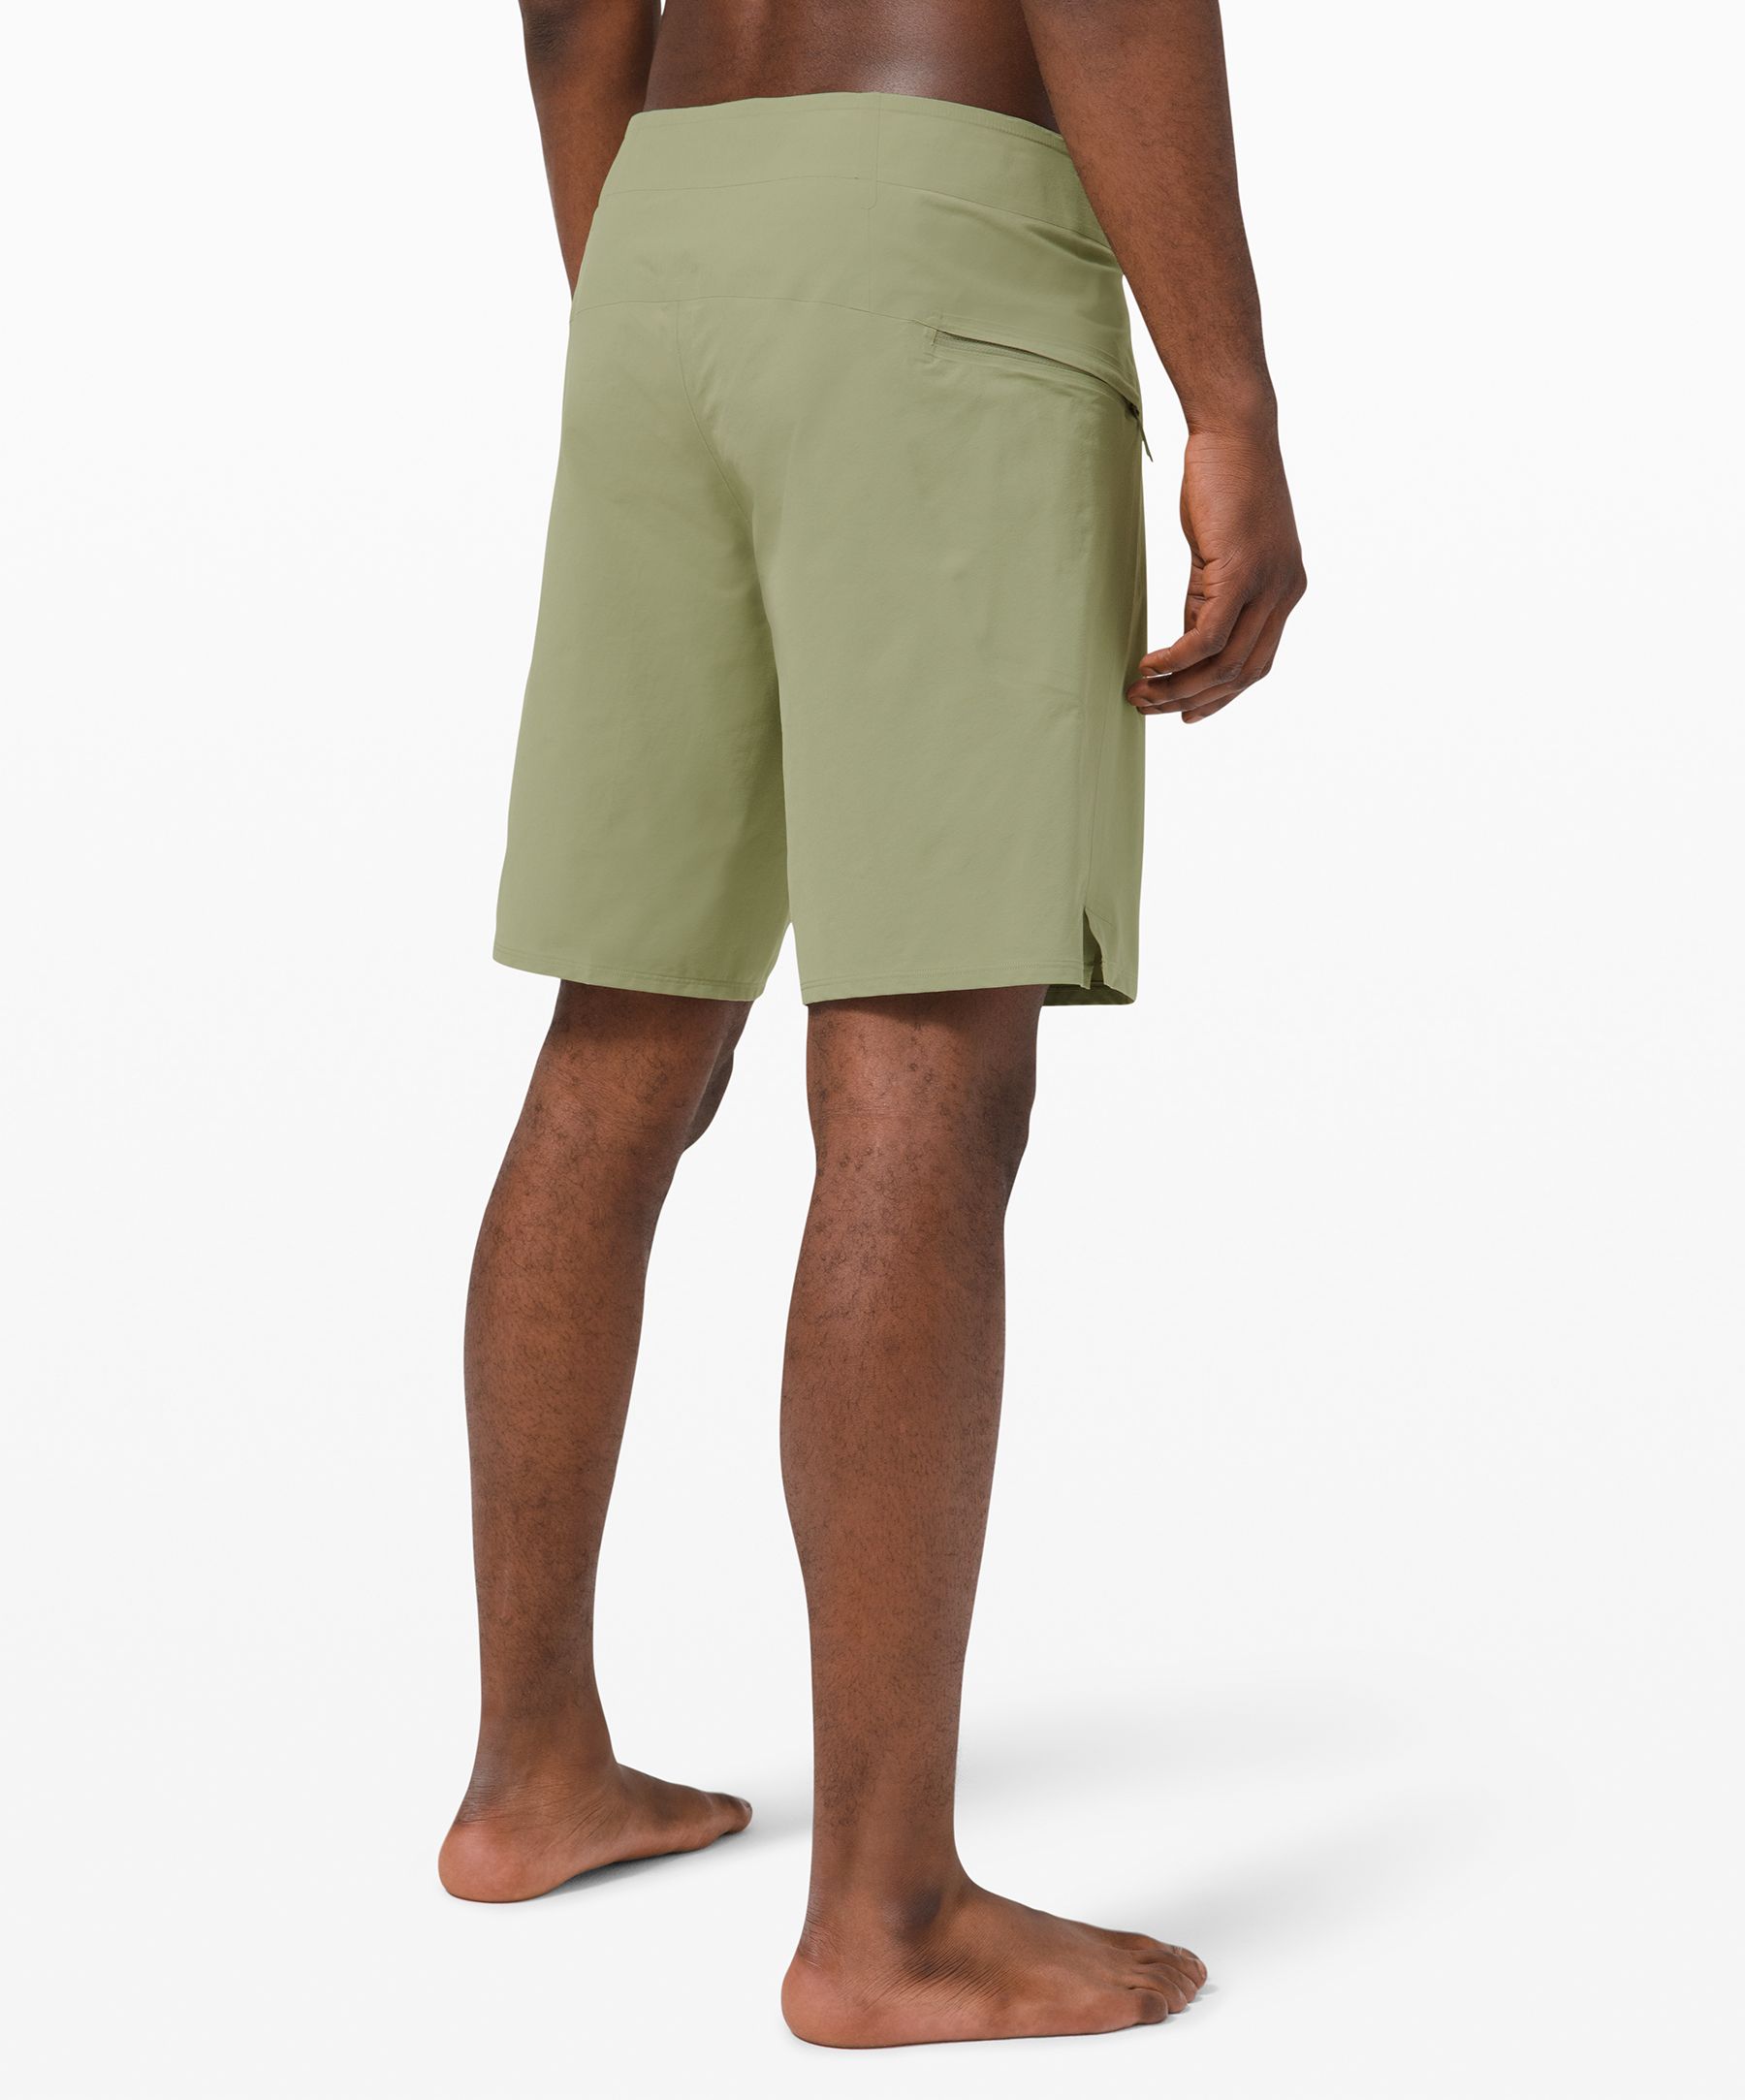 lululemon board shorts